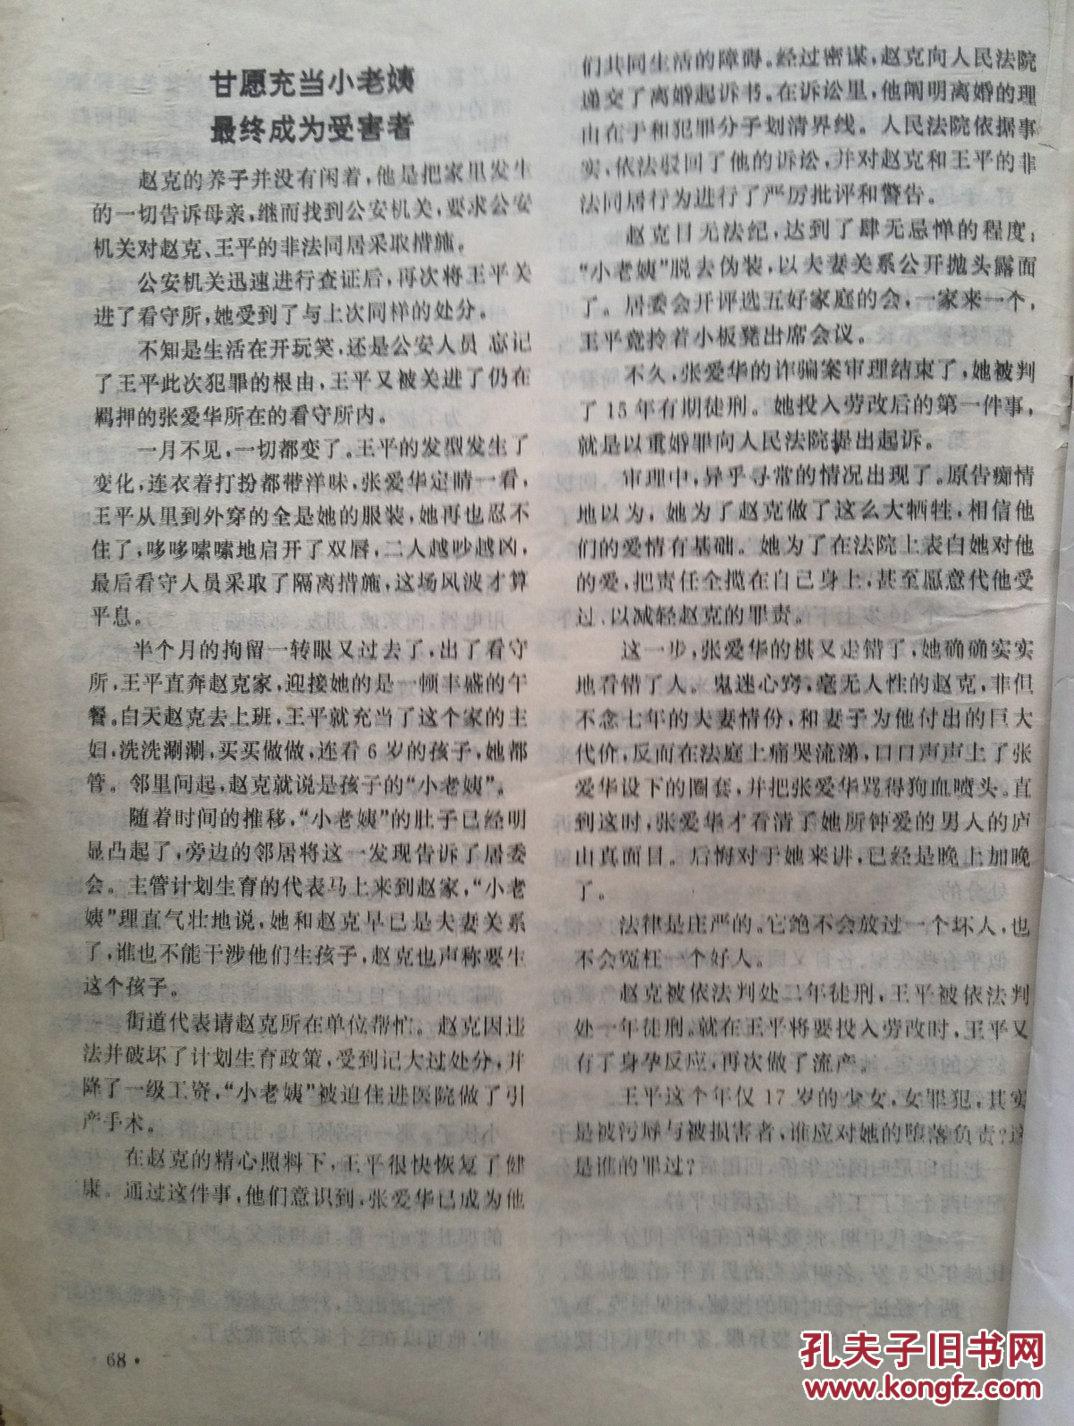 【图】江西法制报精华本1997,中国首例中学生